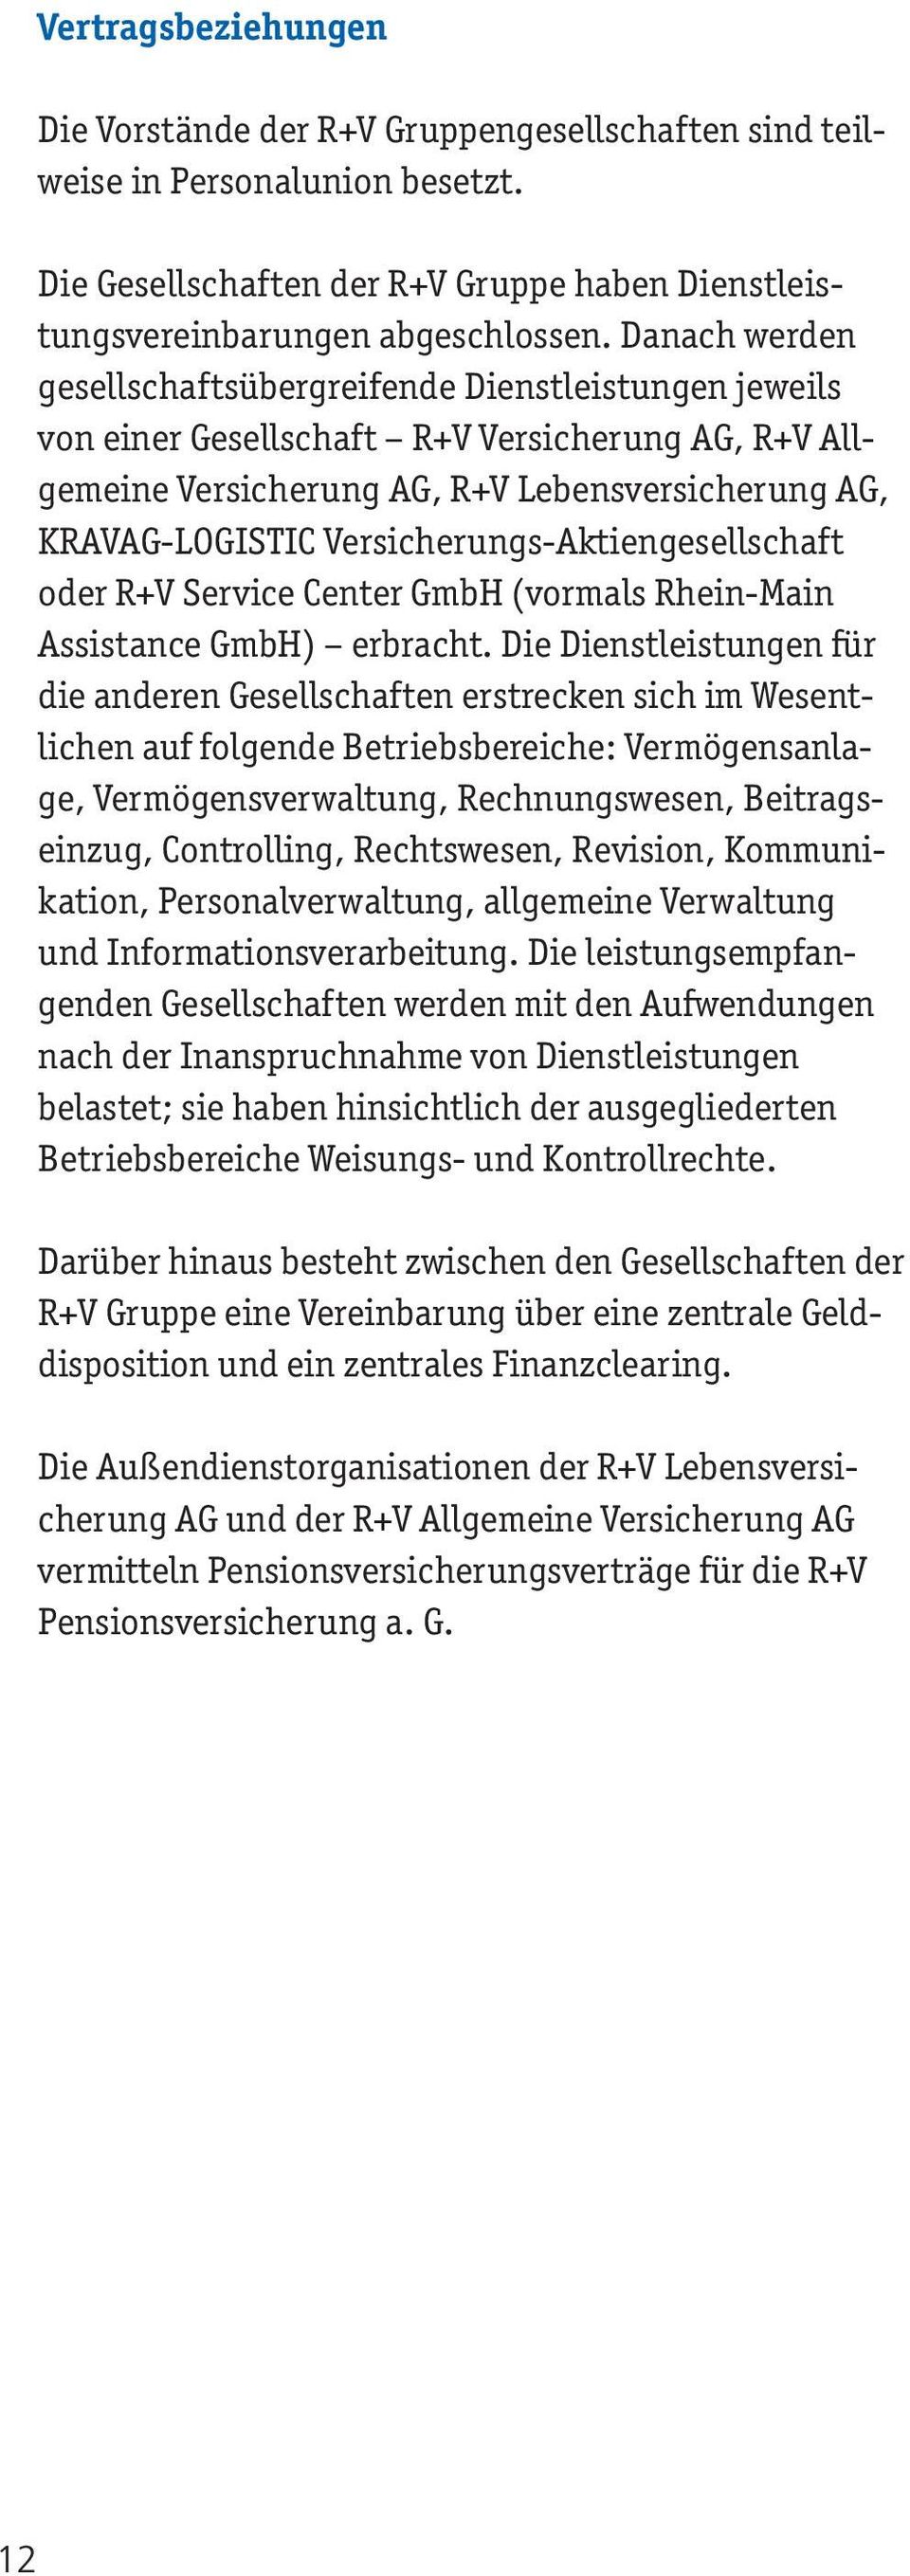 Versicherungs-Aktiengesellschaft oder R+V Service Center GmbH (vormals Rhein-Main Assistance GmbH) erbracht.